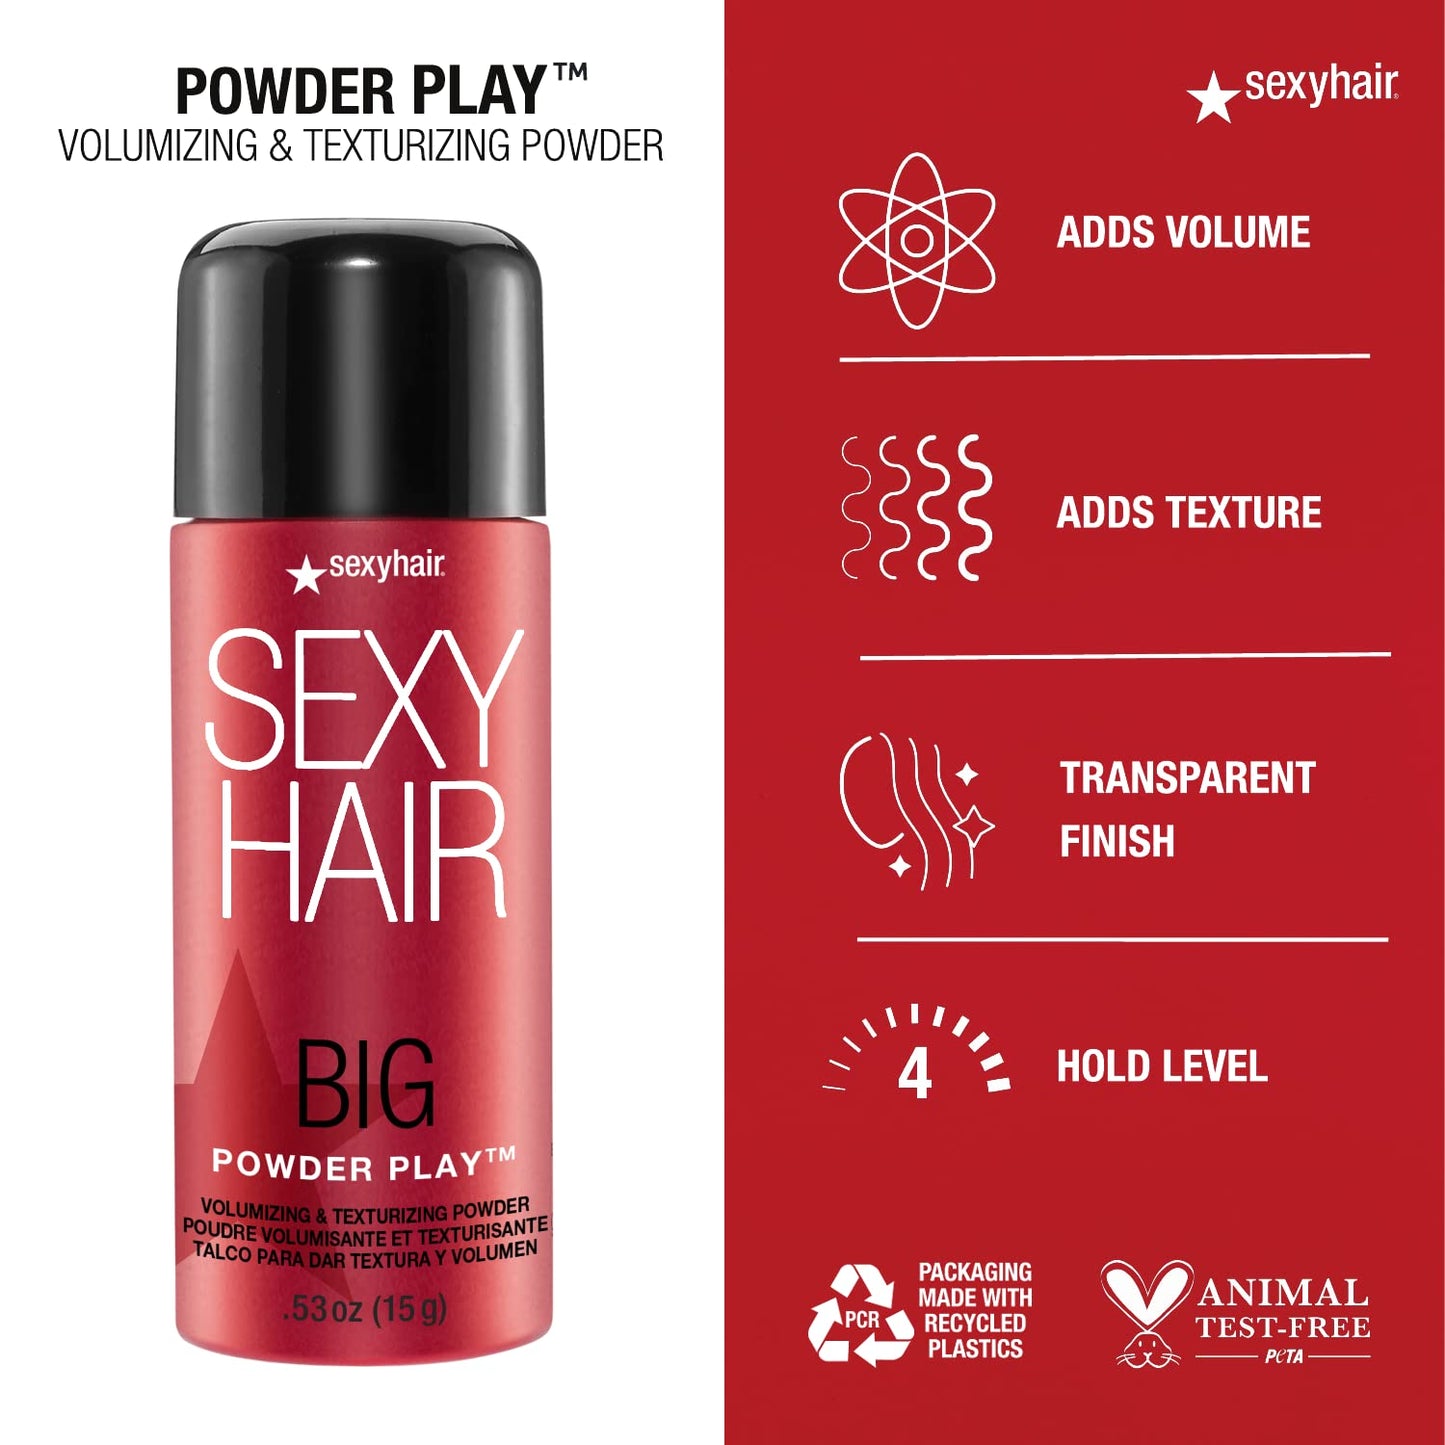 Sexy Hair Big Sexy Powder Play Volumizing Powder - 0.53 fl oz